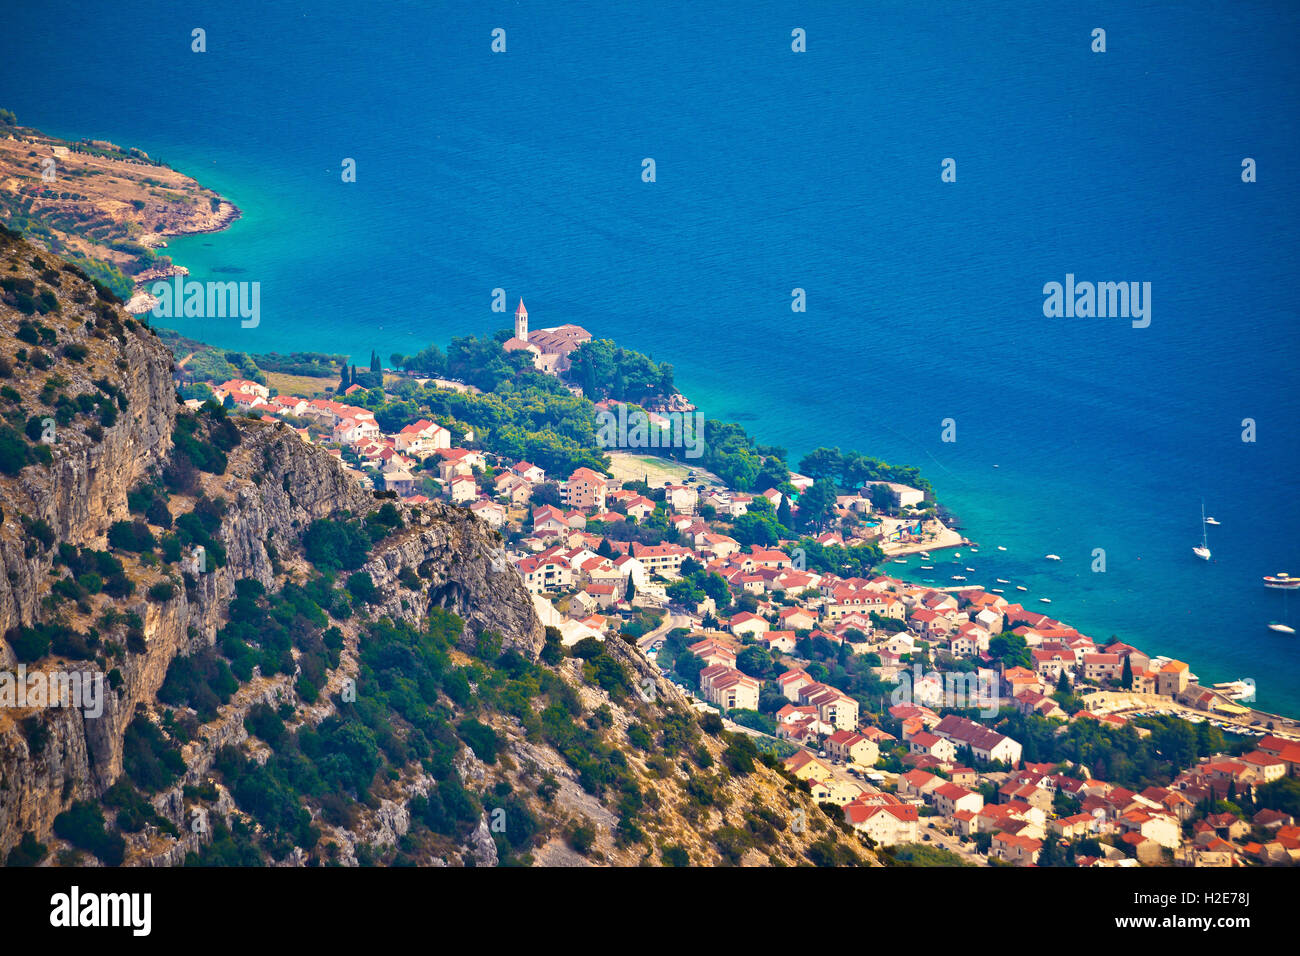 Ville de Bol de Vidova Gora vue aérienne, île de Brac, Dalmatie, Croatie Banque D'Images